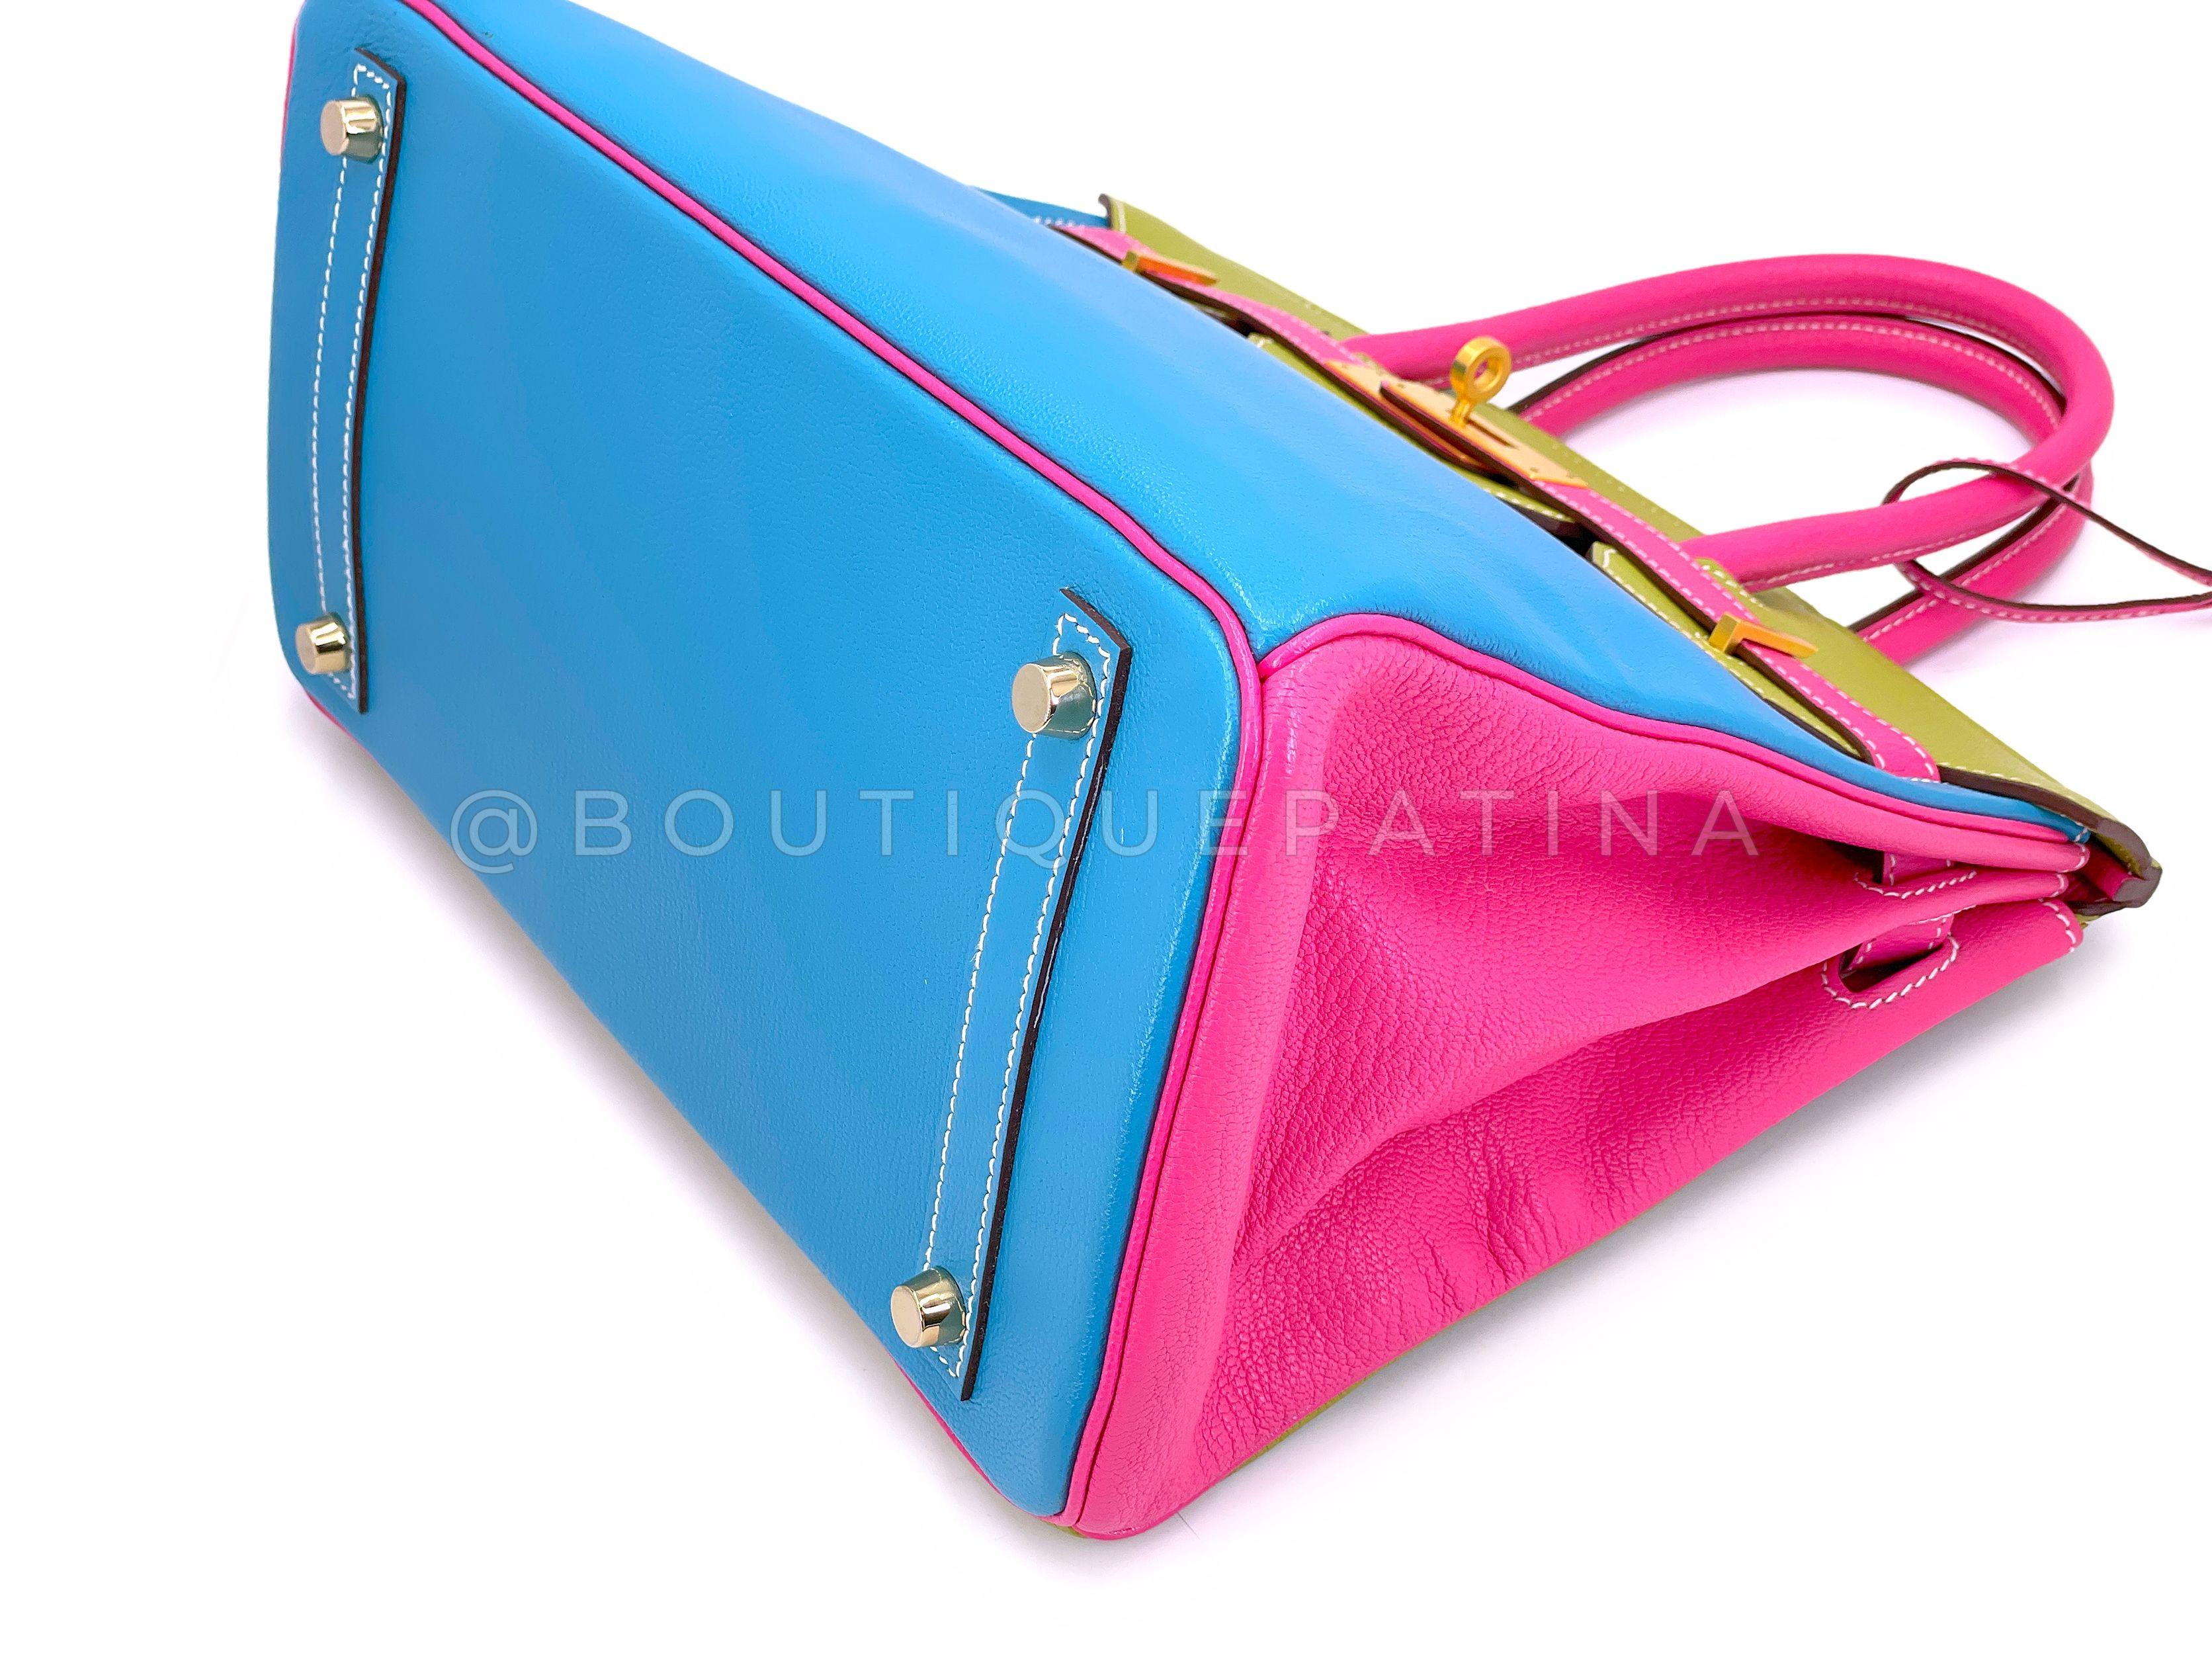 Hermès Special Order Chèvre 30cm Birkin Brushed Gold Pink Green Blue Bag 68121 For Sale 3